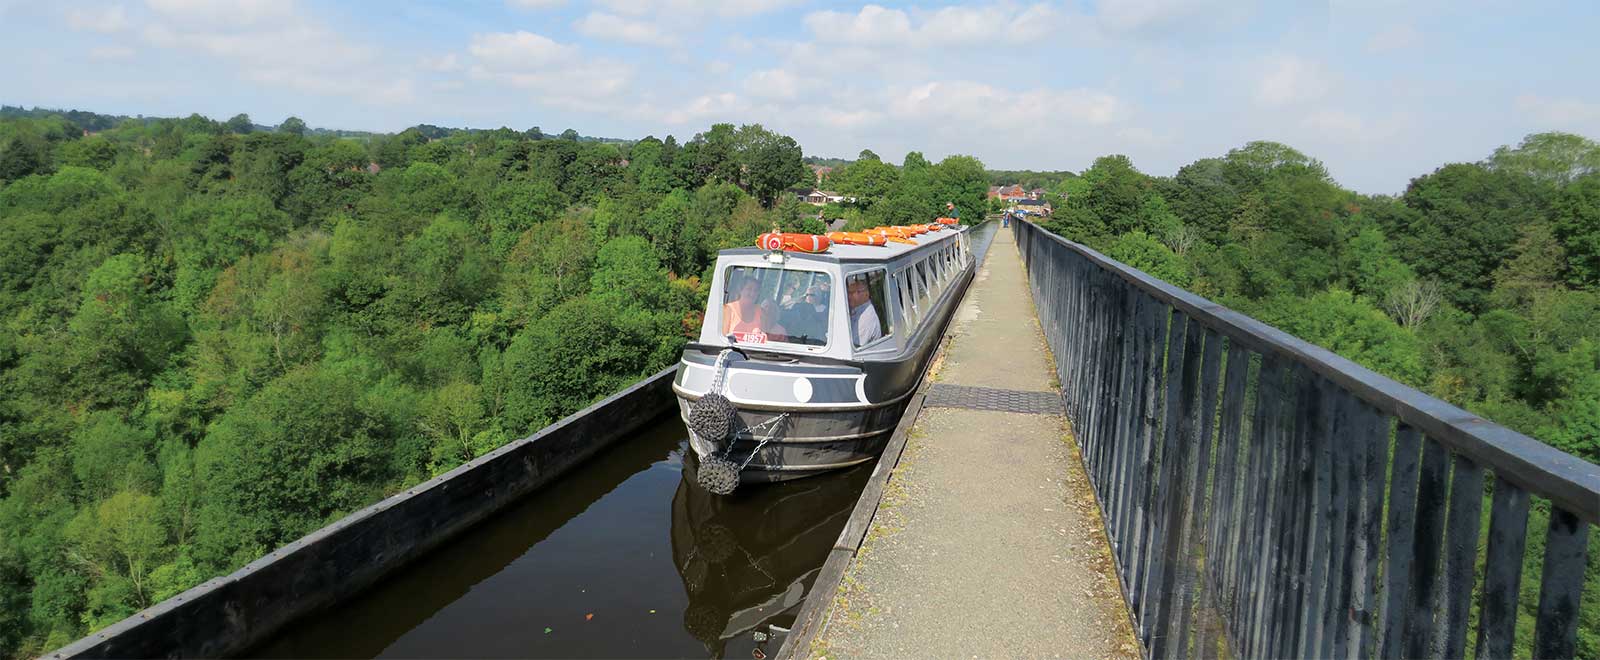 llangollen canal trips over aqueduct